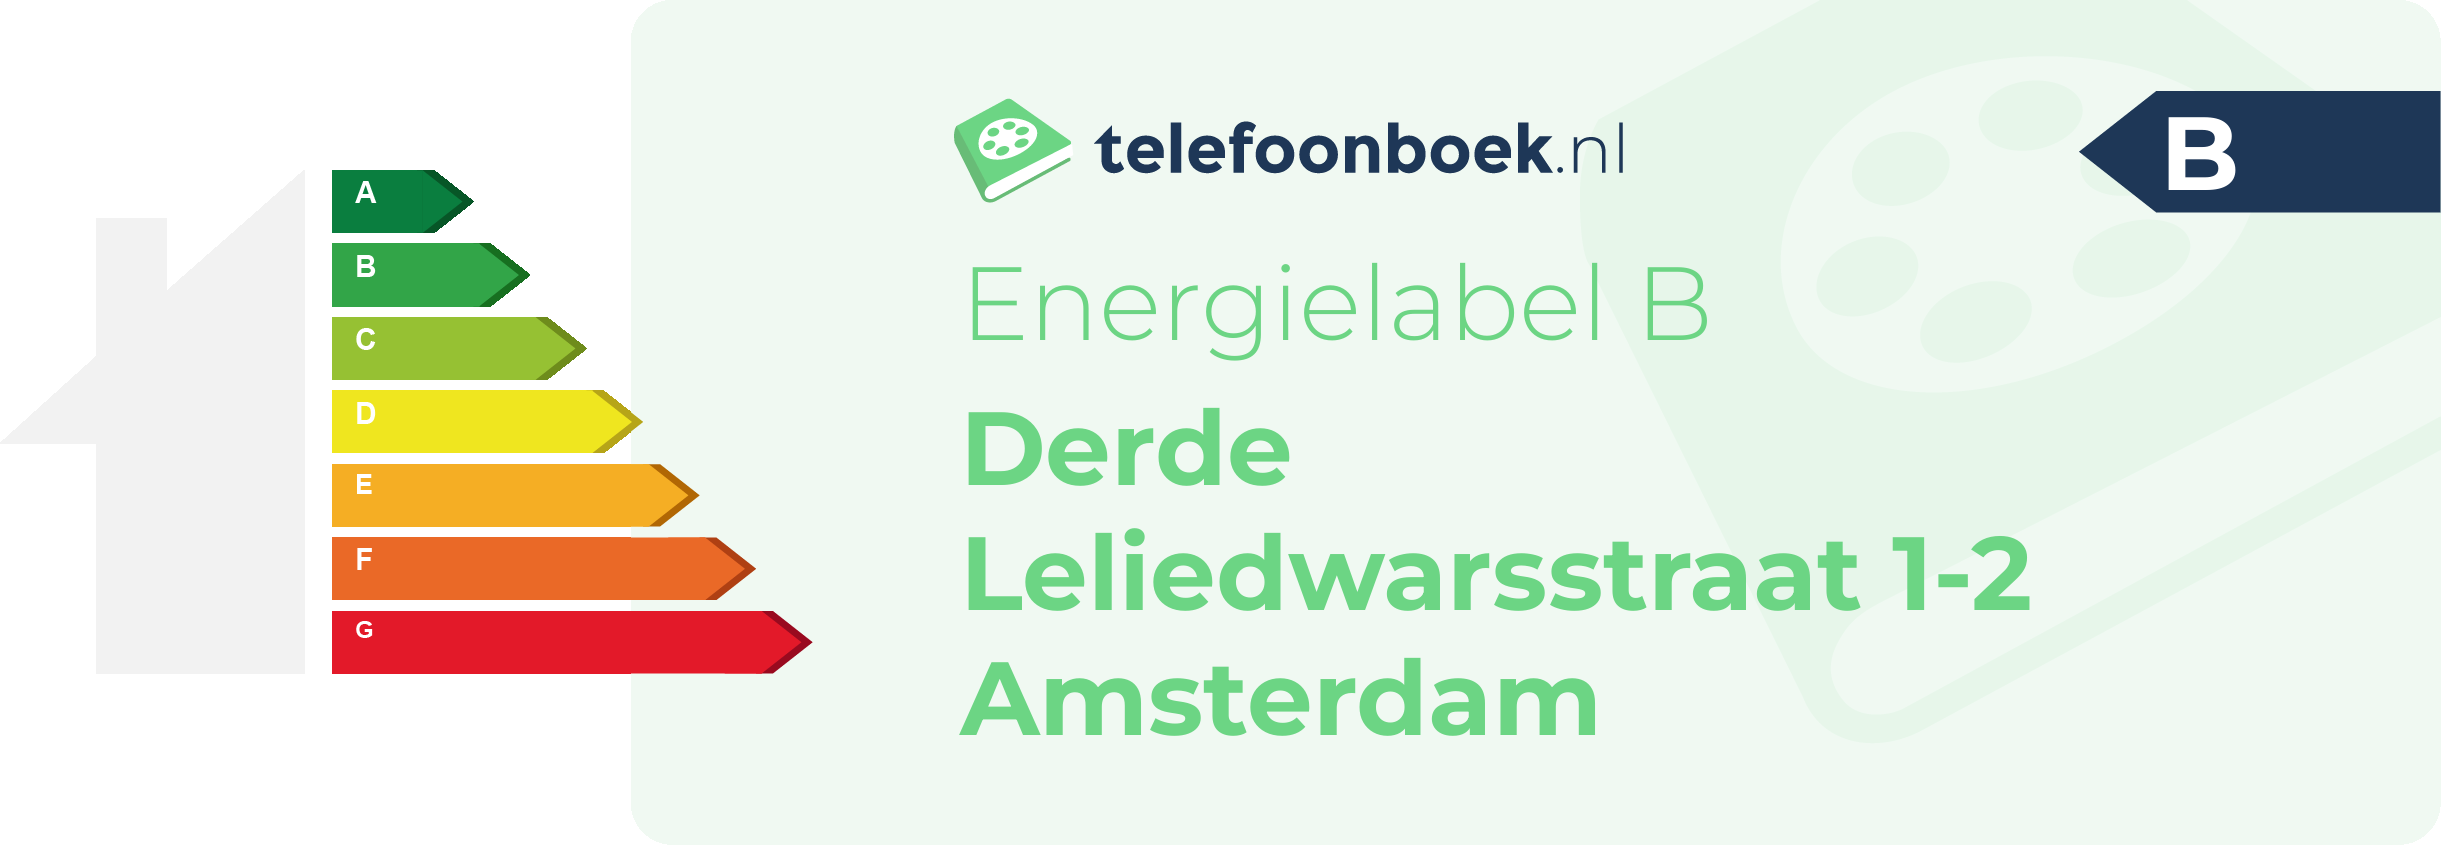 Energielabel Derde Leliedwarsstraat 1-2 Amsterdam